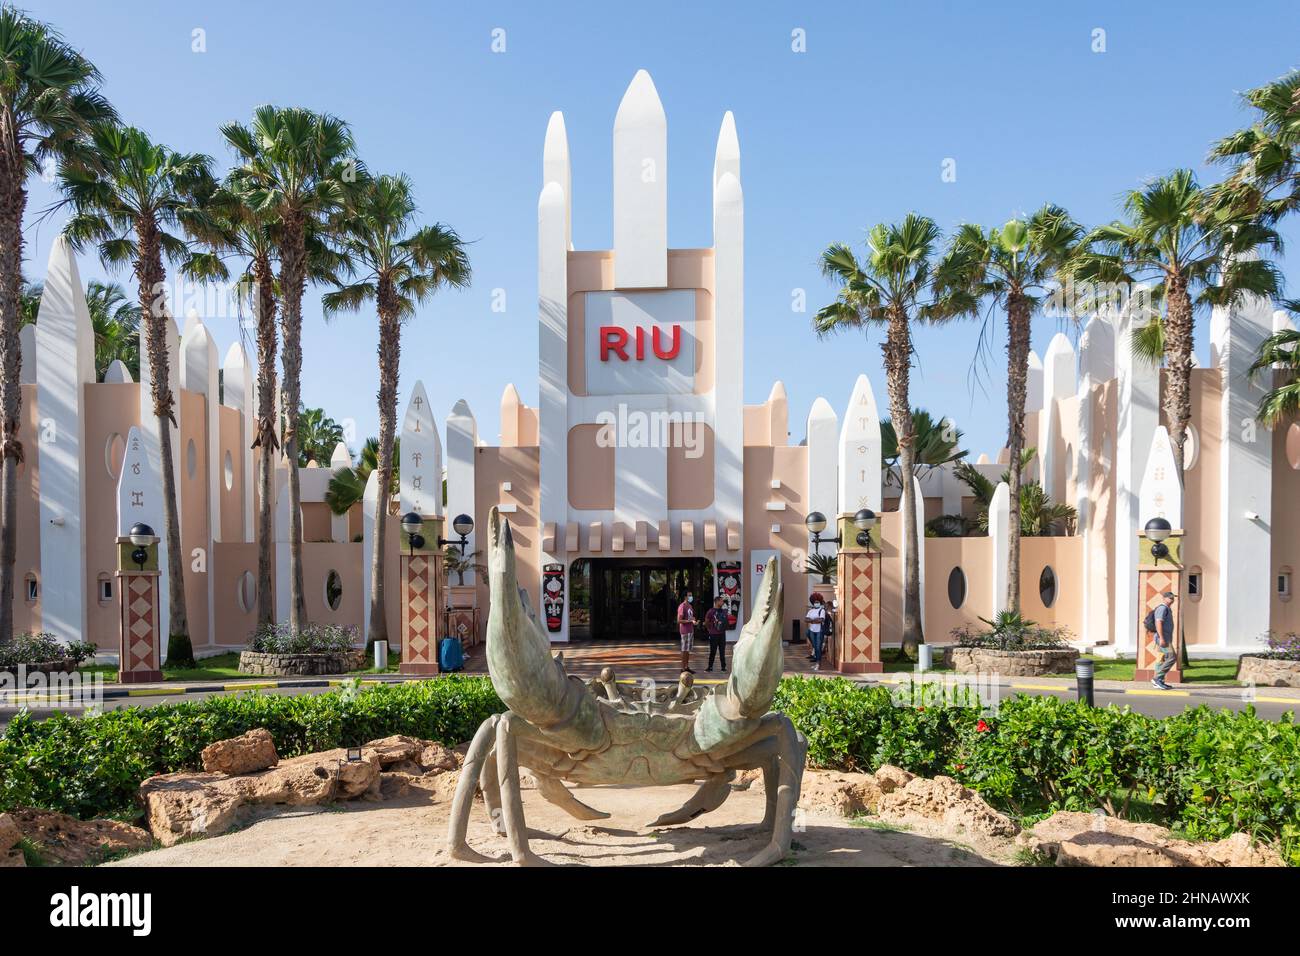 Eintritt zum Rui Funana Hotel, Santa Maria, Sal, República de Cabo (Kap Verde) Stockfoto